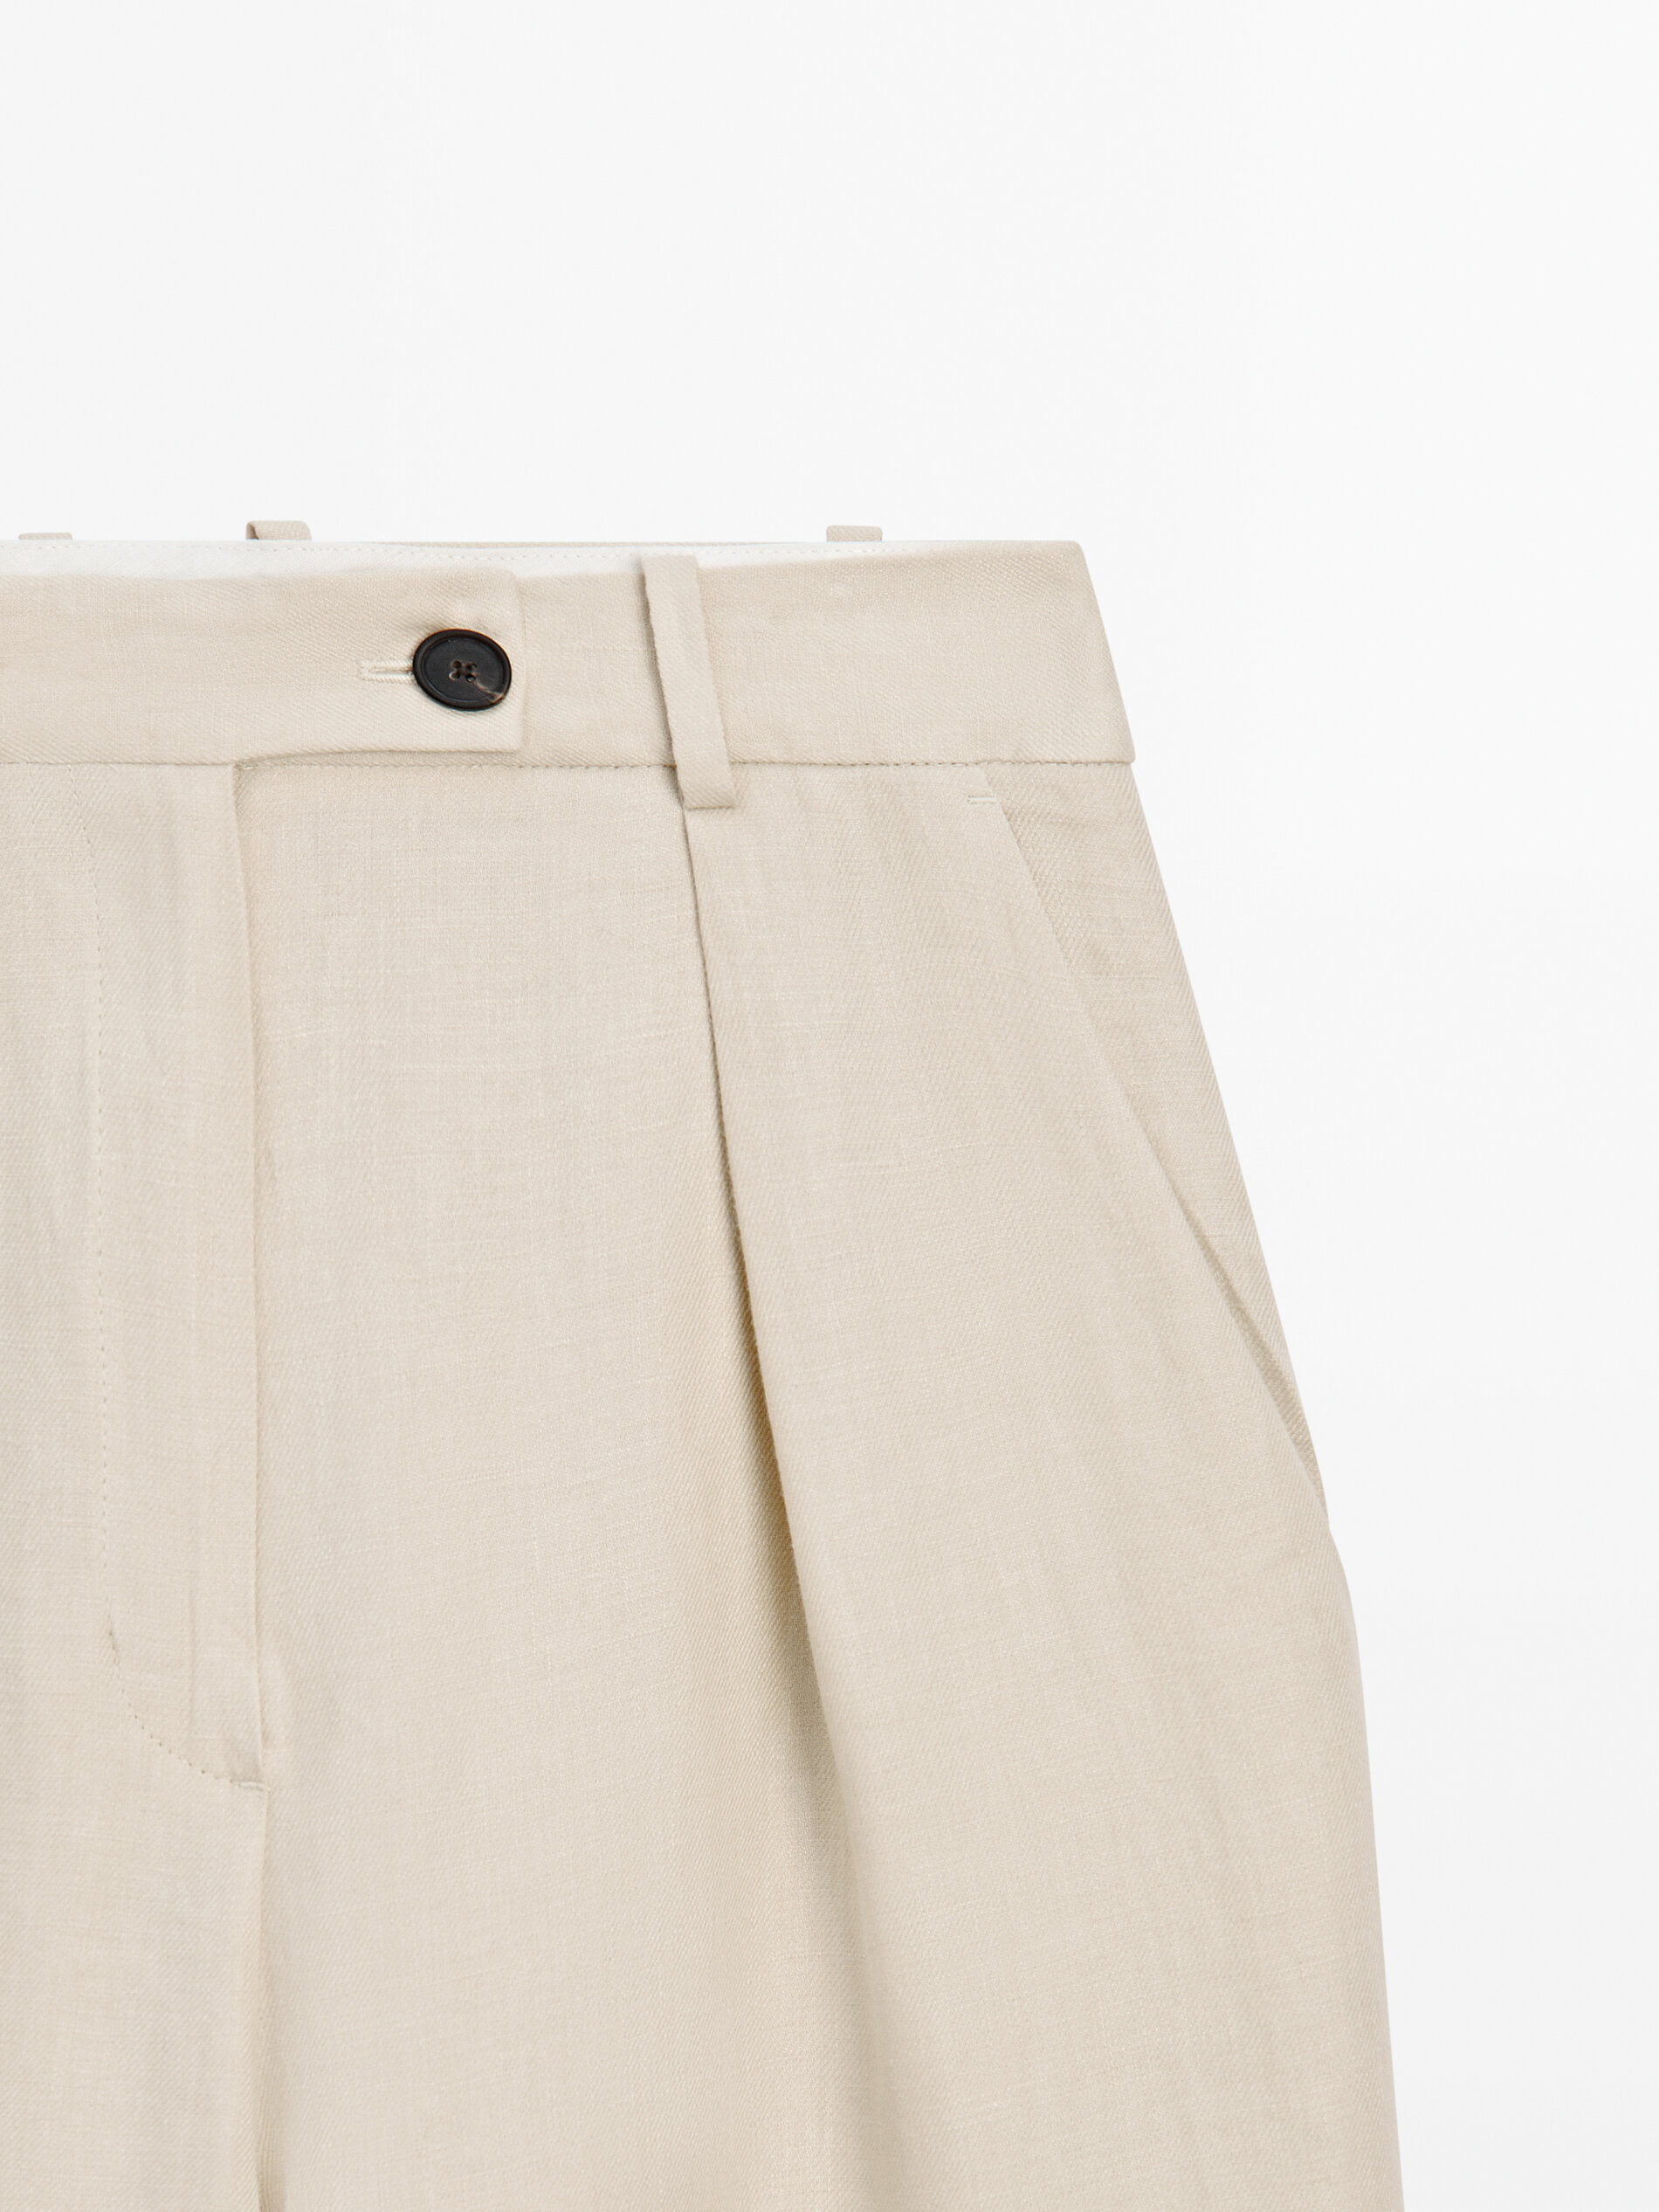 Pantalón traje ancho 100% lino pinzas